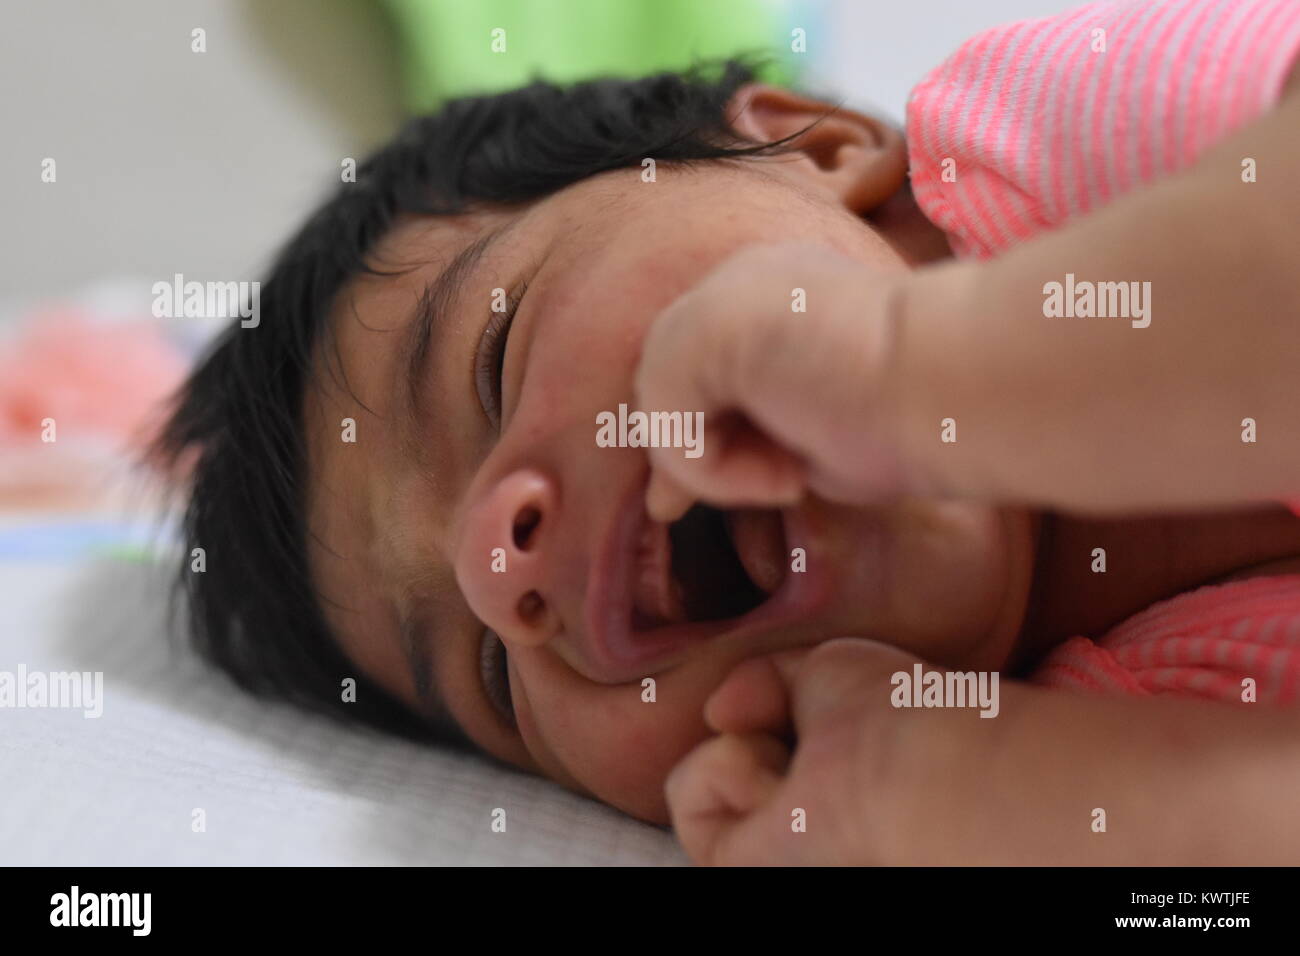 La dentizione del neonato che mostra il disagio con bocca aperta Foto Stock